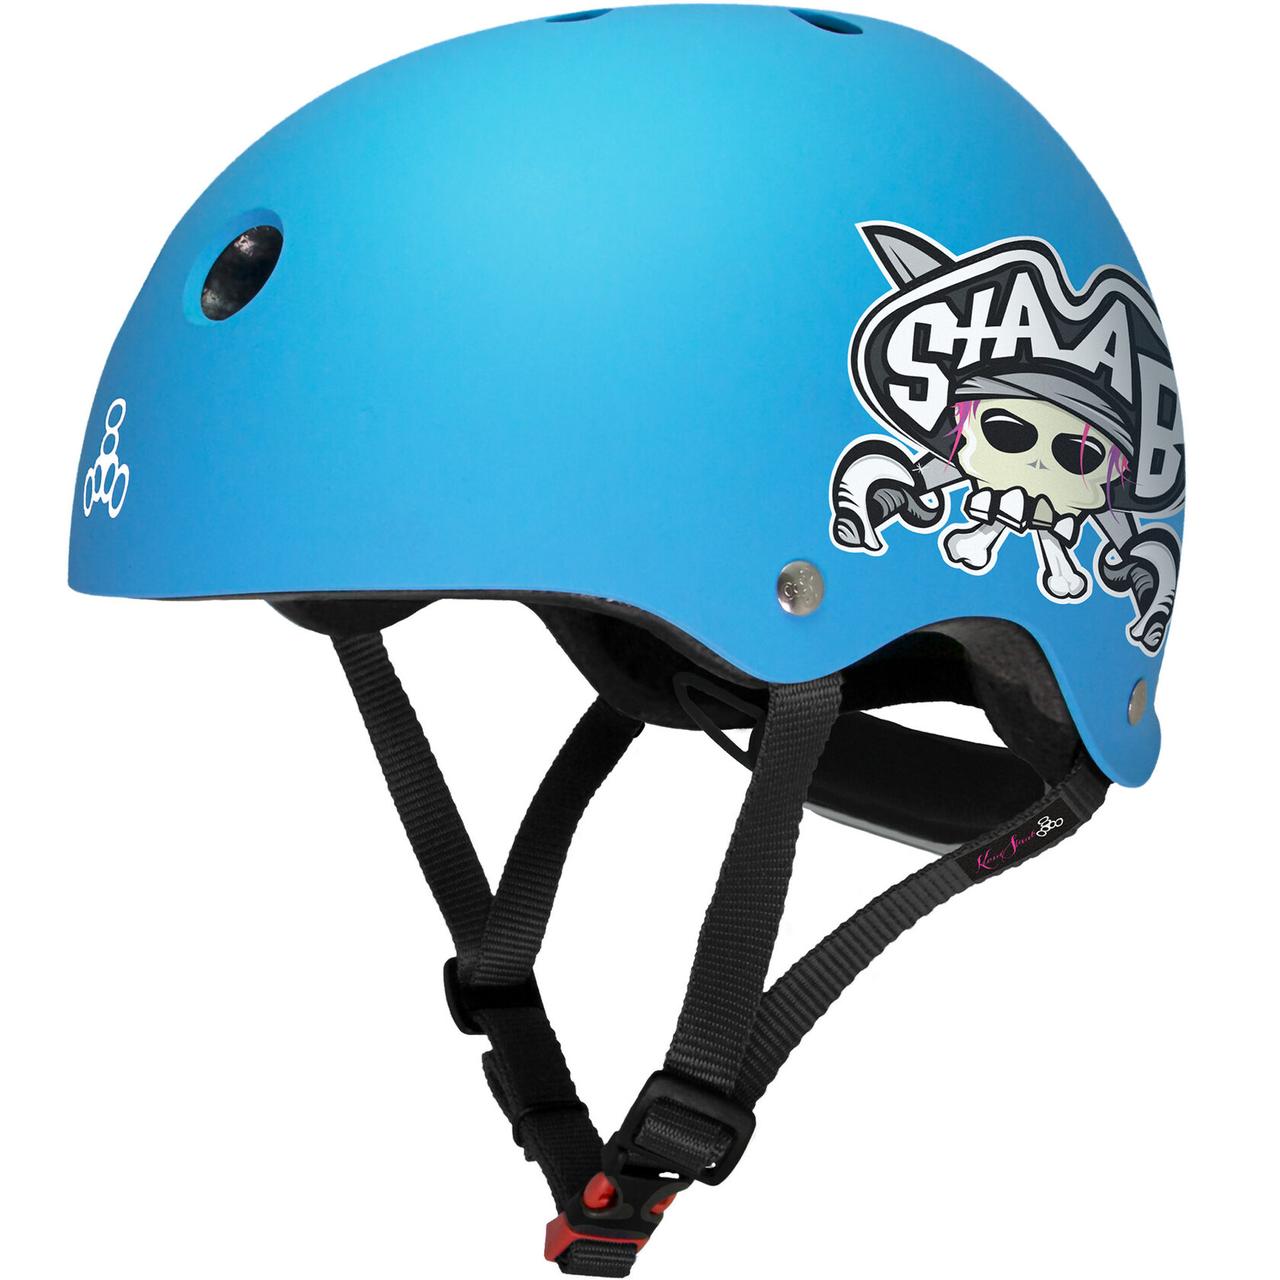 Шлем защитный Triple Eight Lil 8 Staab Neon Blue, 5+, синий шлем jetcat max m 54 57см blue stars